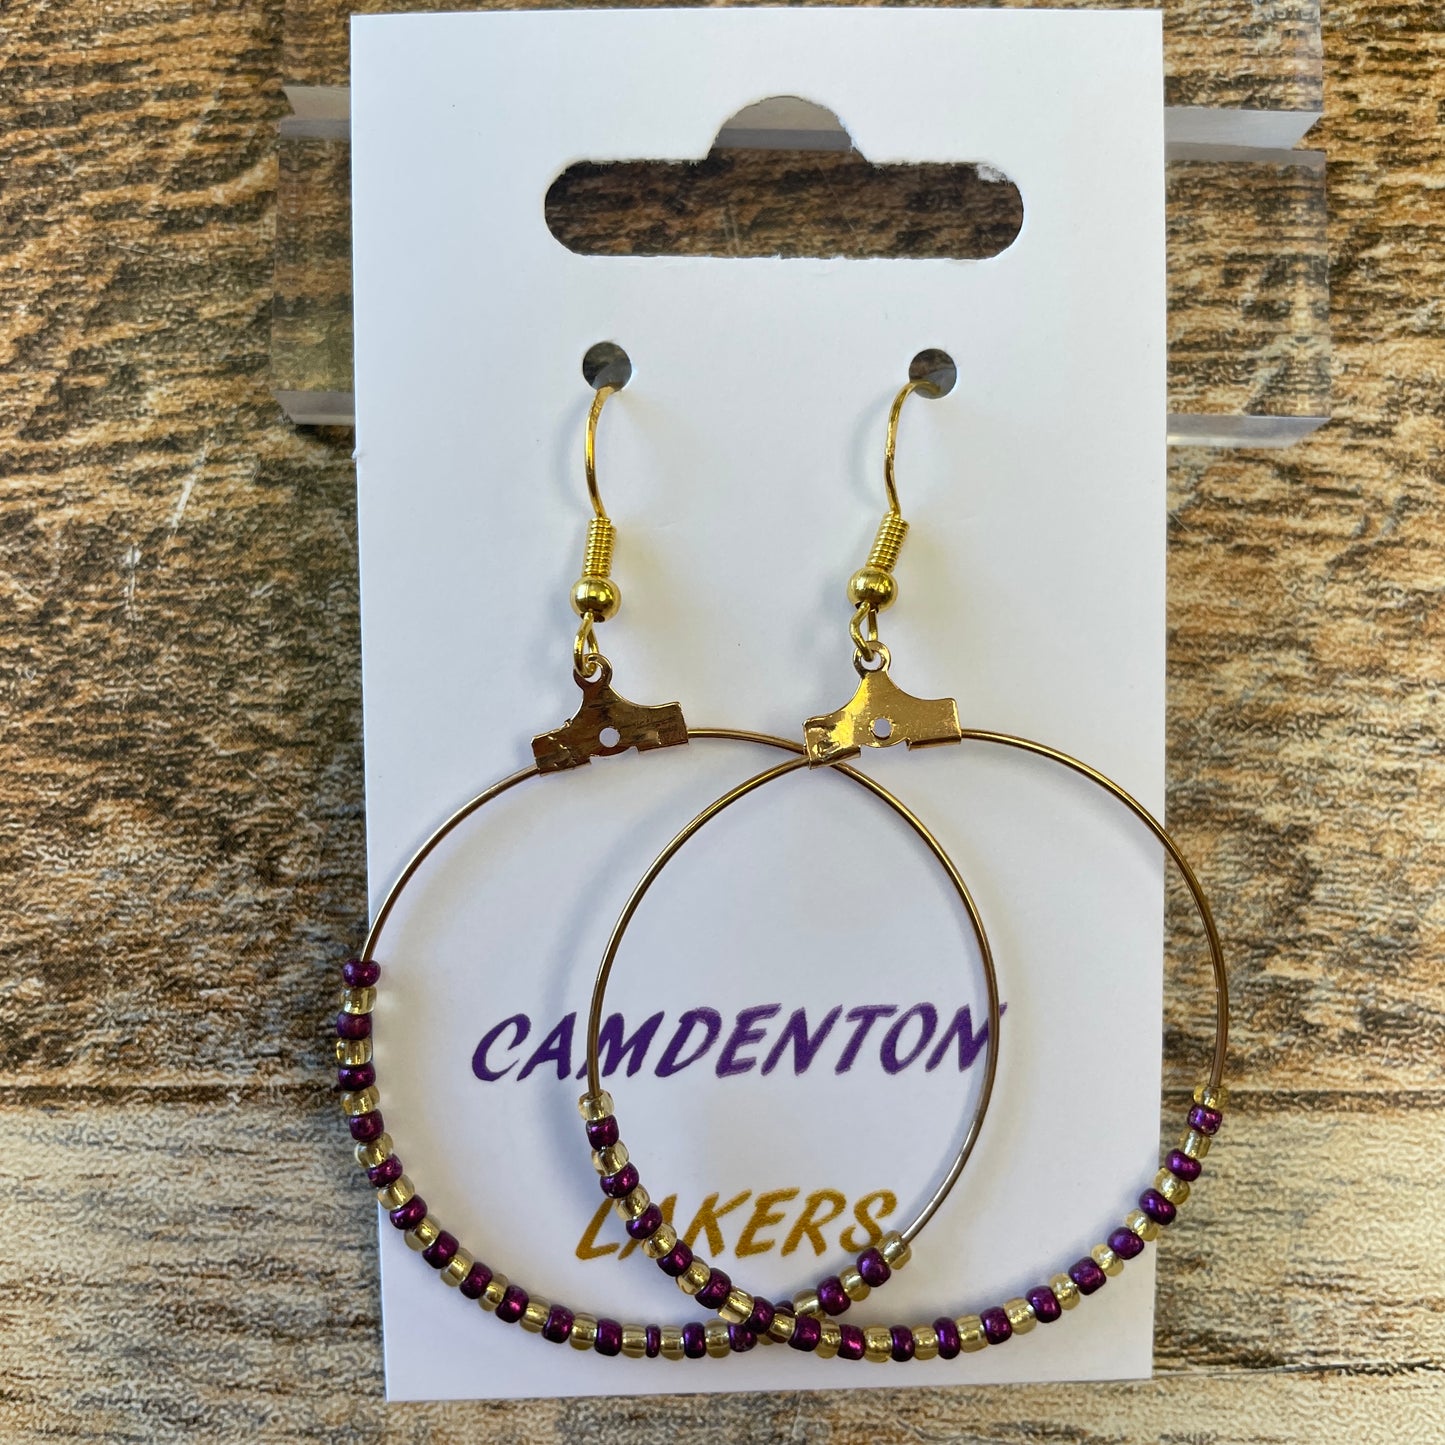 Camdenton Lakers Earrings